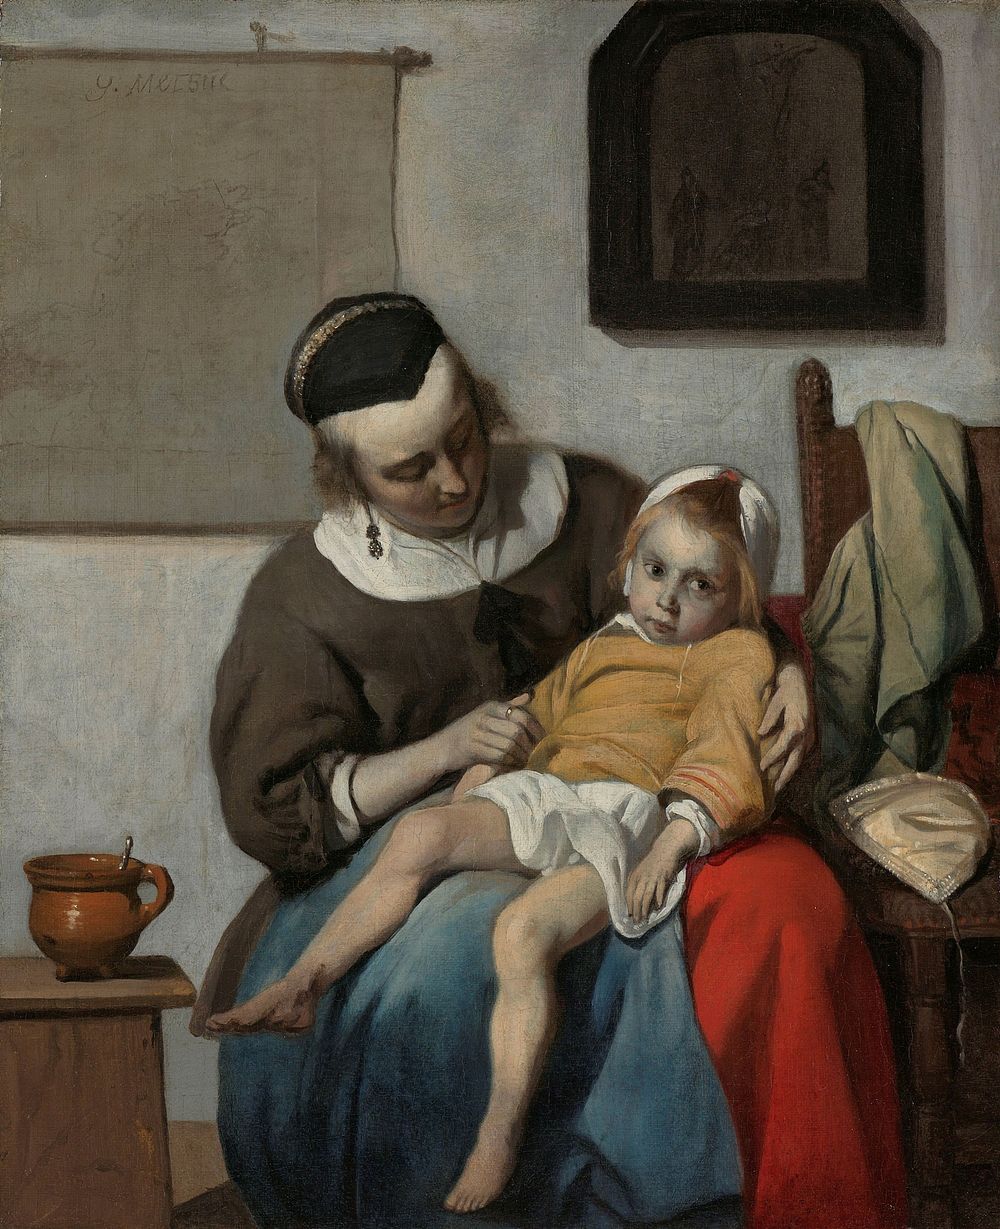 The Sick Child (c. 1664 - c. 1666) by Gabriël Metsu